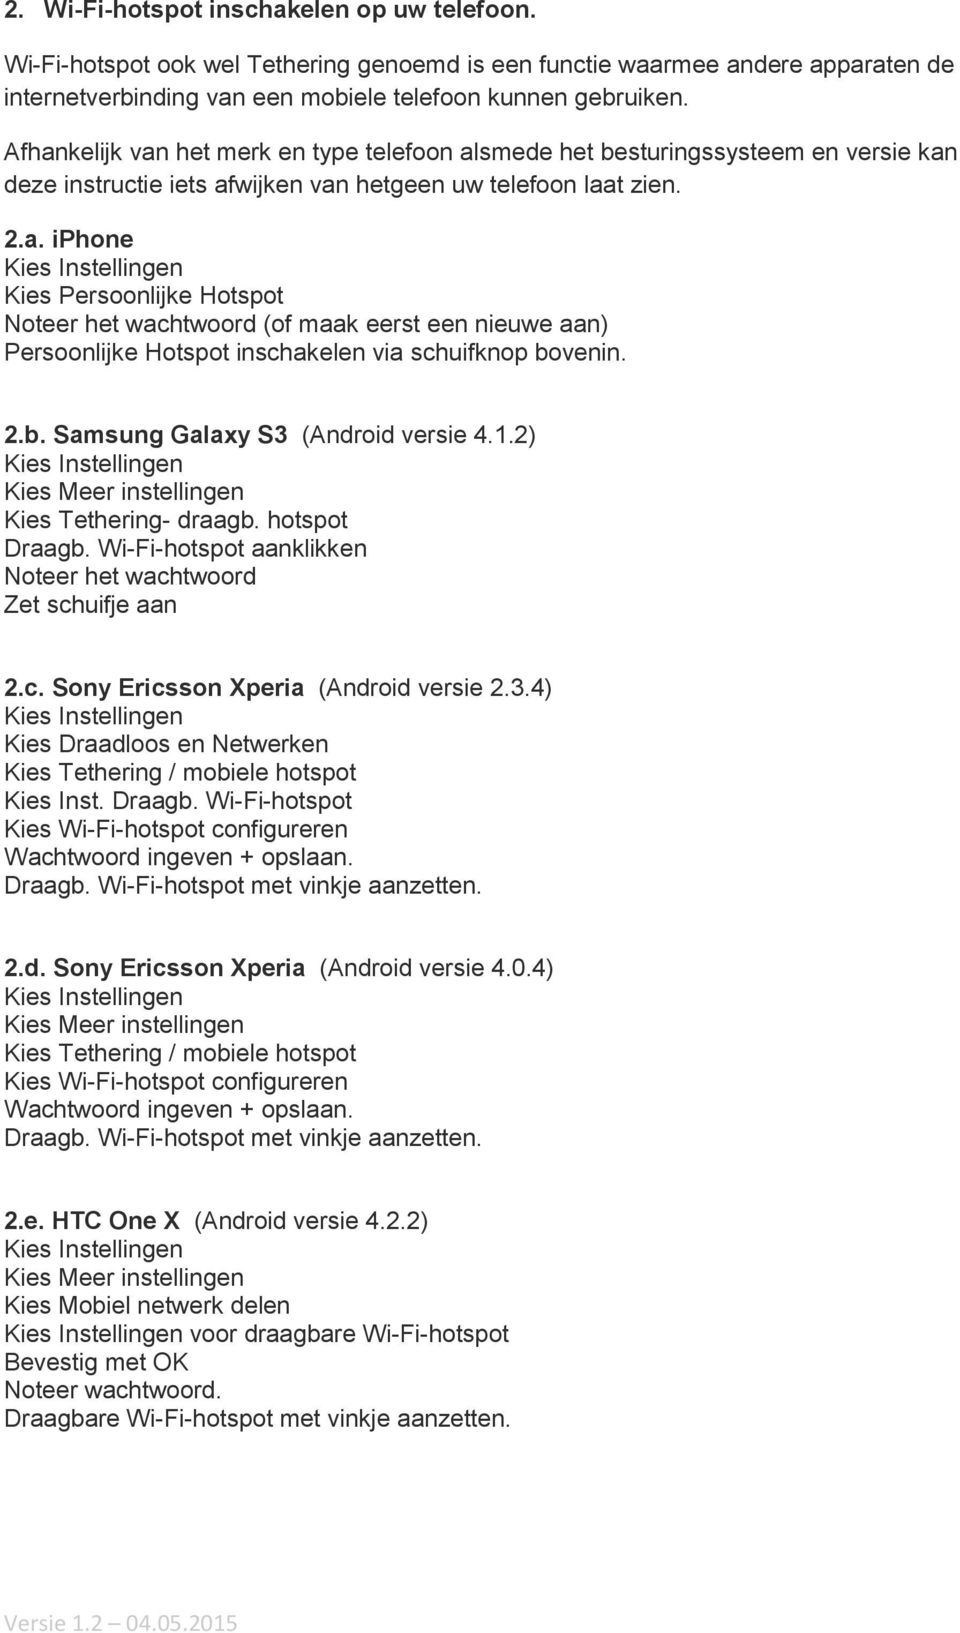 2.b. Samsung Galaxy S3 (Android versie 4.1.2) Kies Instellingen Kies Meer instellingen Kies Tethering- draagb. hotspot Draagb. Wi-Fi-hotspot aanklikken Noteer het wach